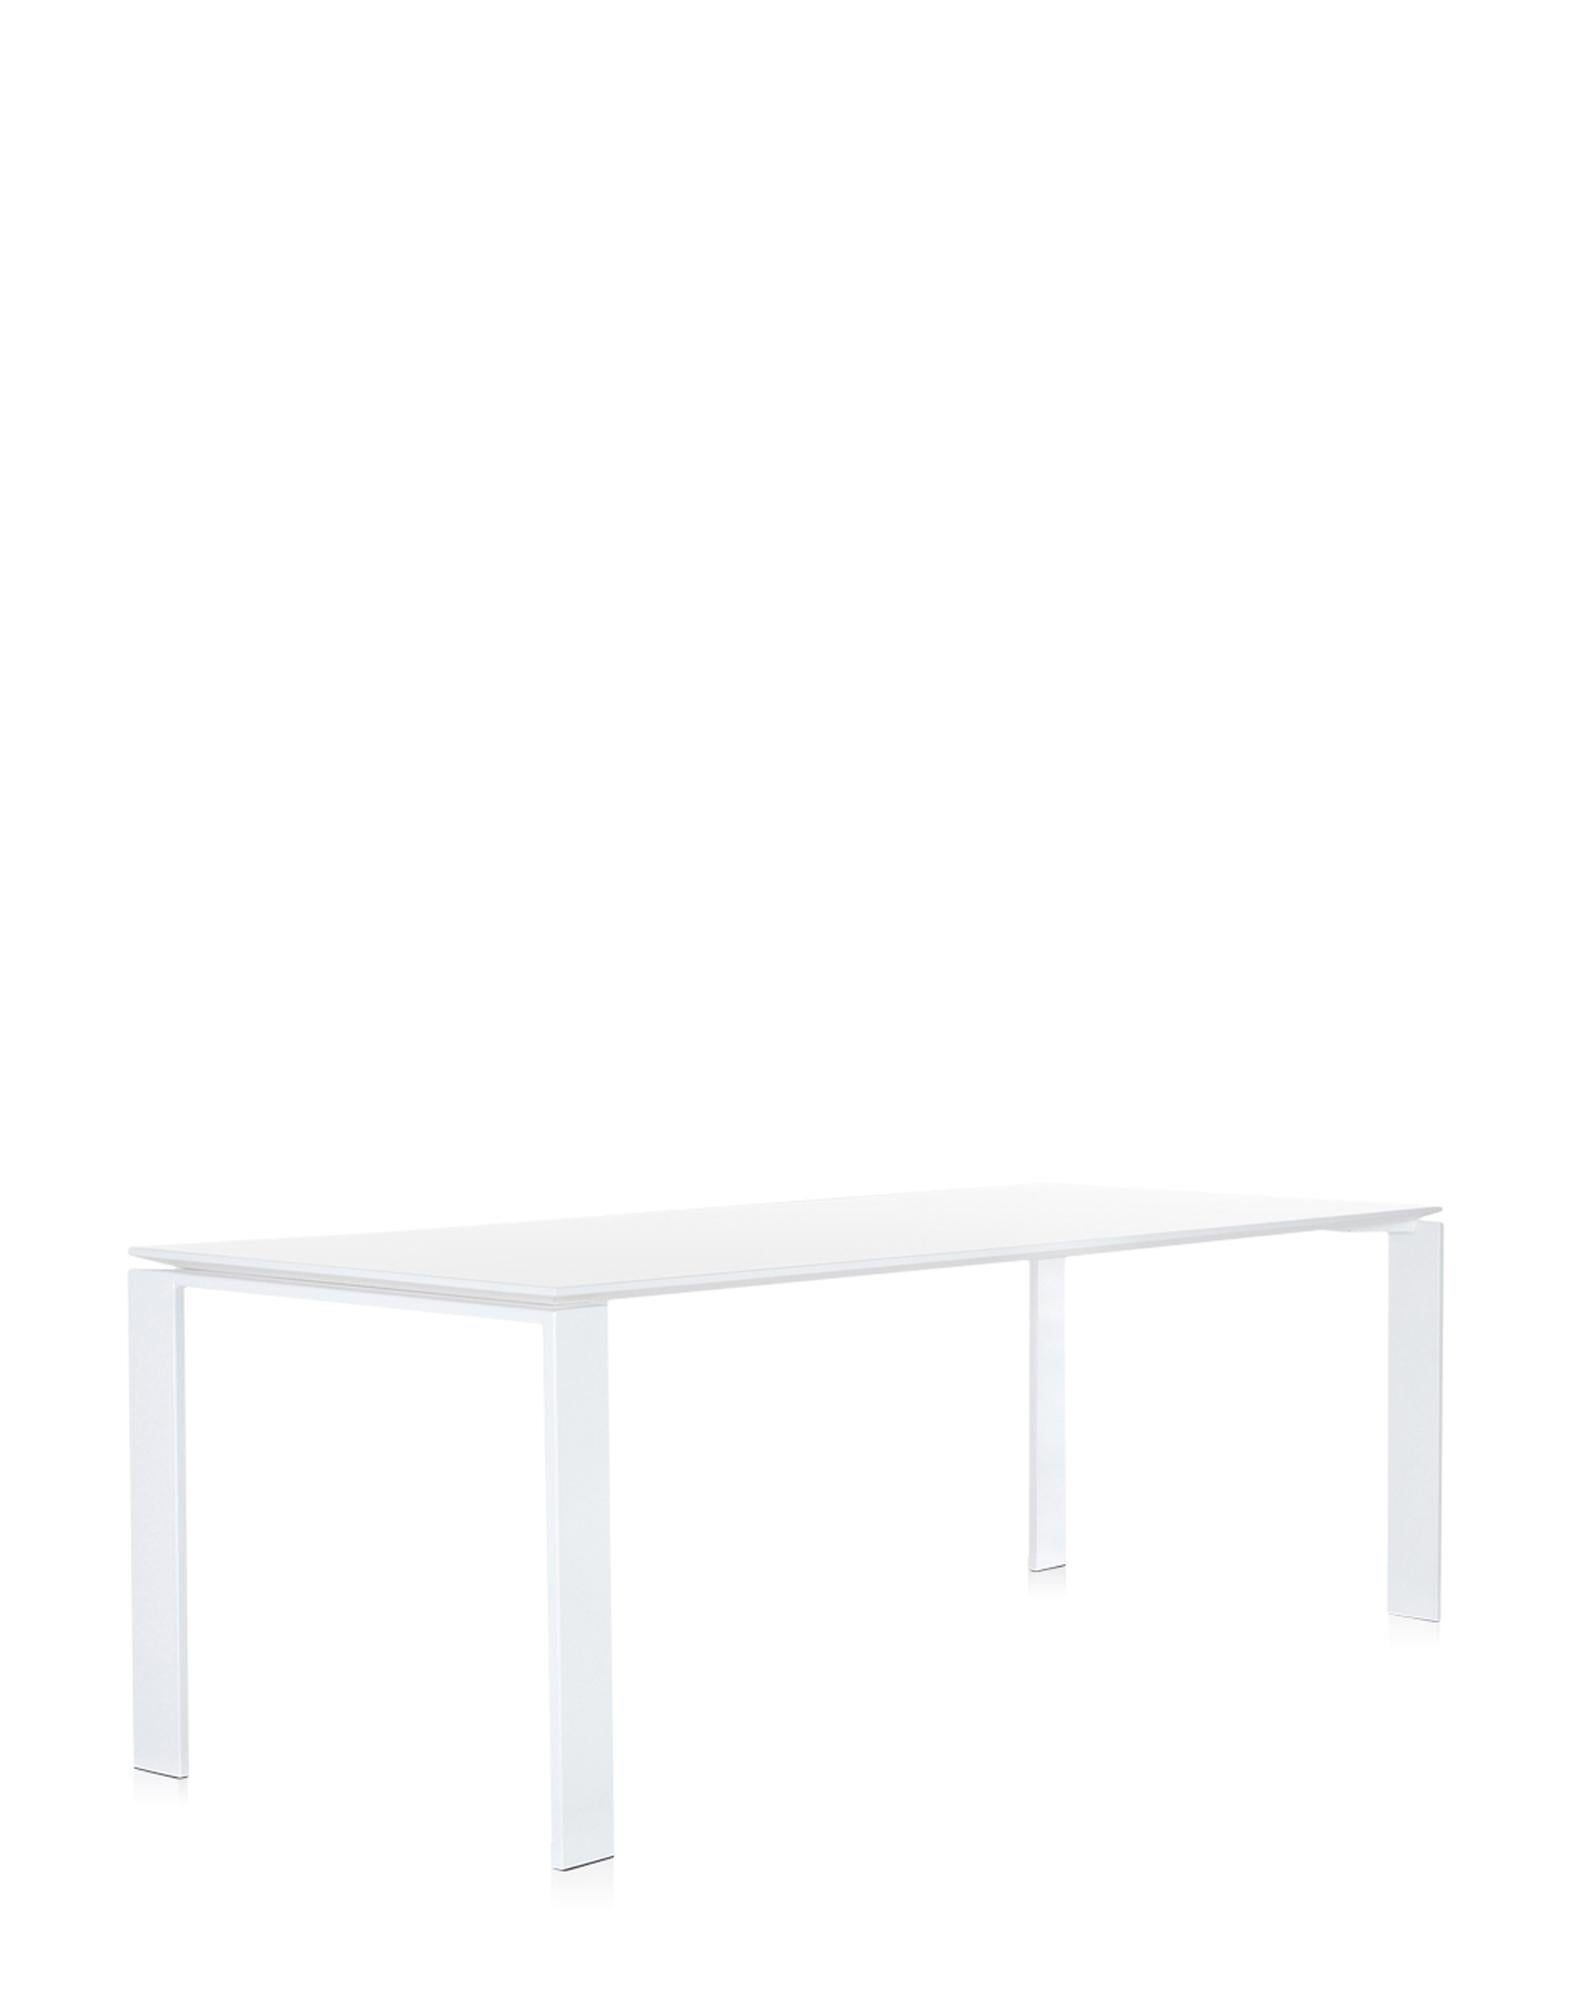 Cette table fonctionnelle et raffinée présente également un design géométrique strict. Grâce à l'élégante solution de design, la position du plateau mince permet de positionner facilement des tiroirs ou des meubles de rangement pour le matériel